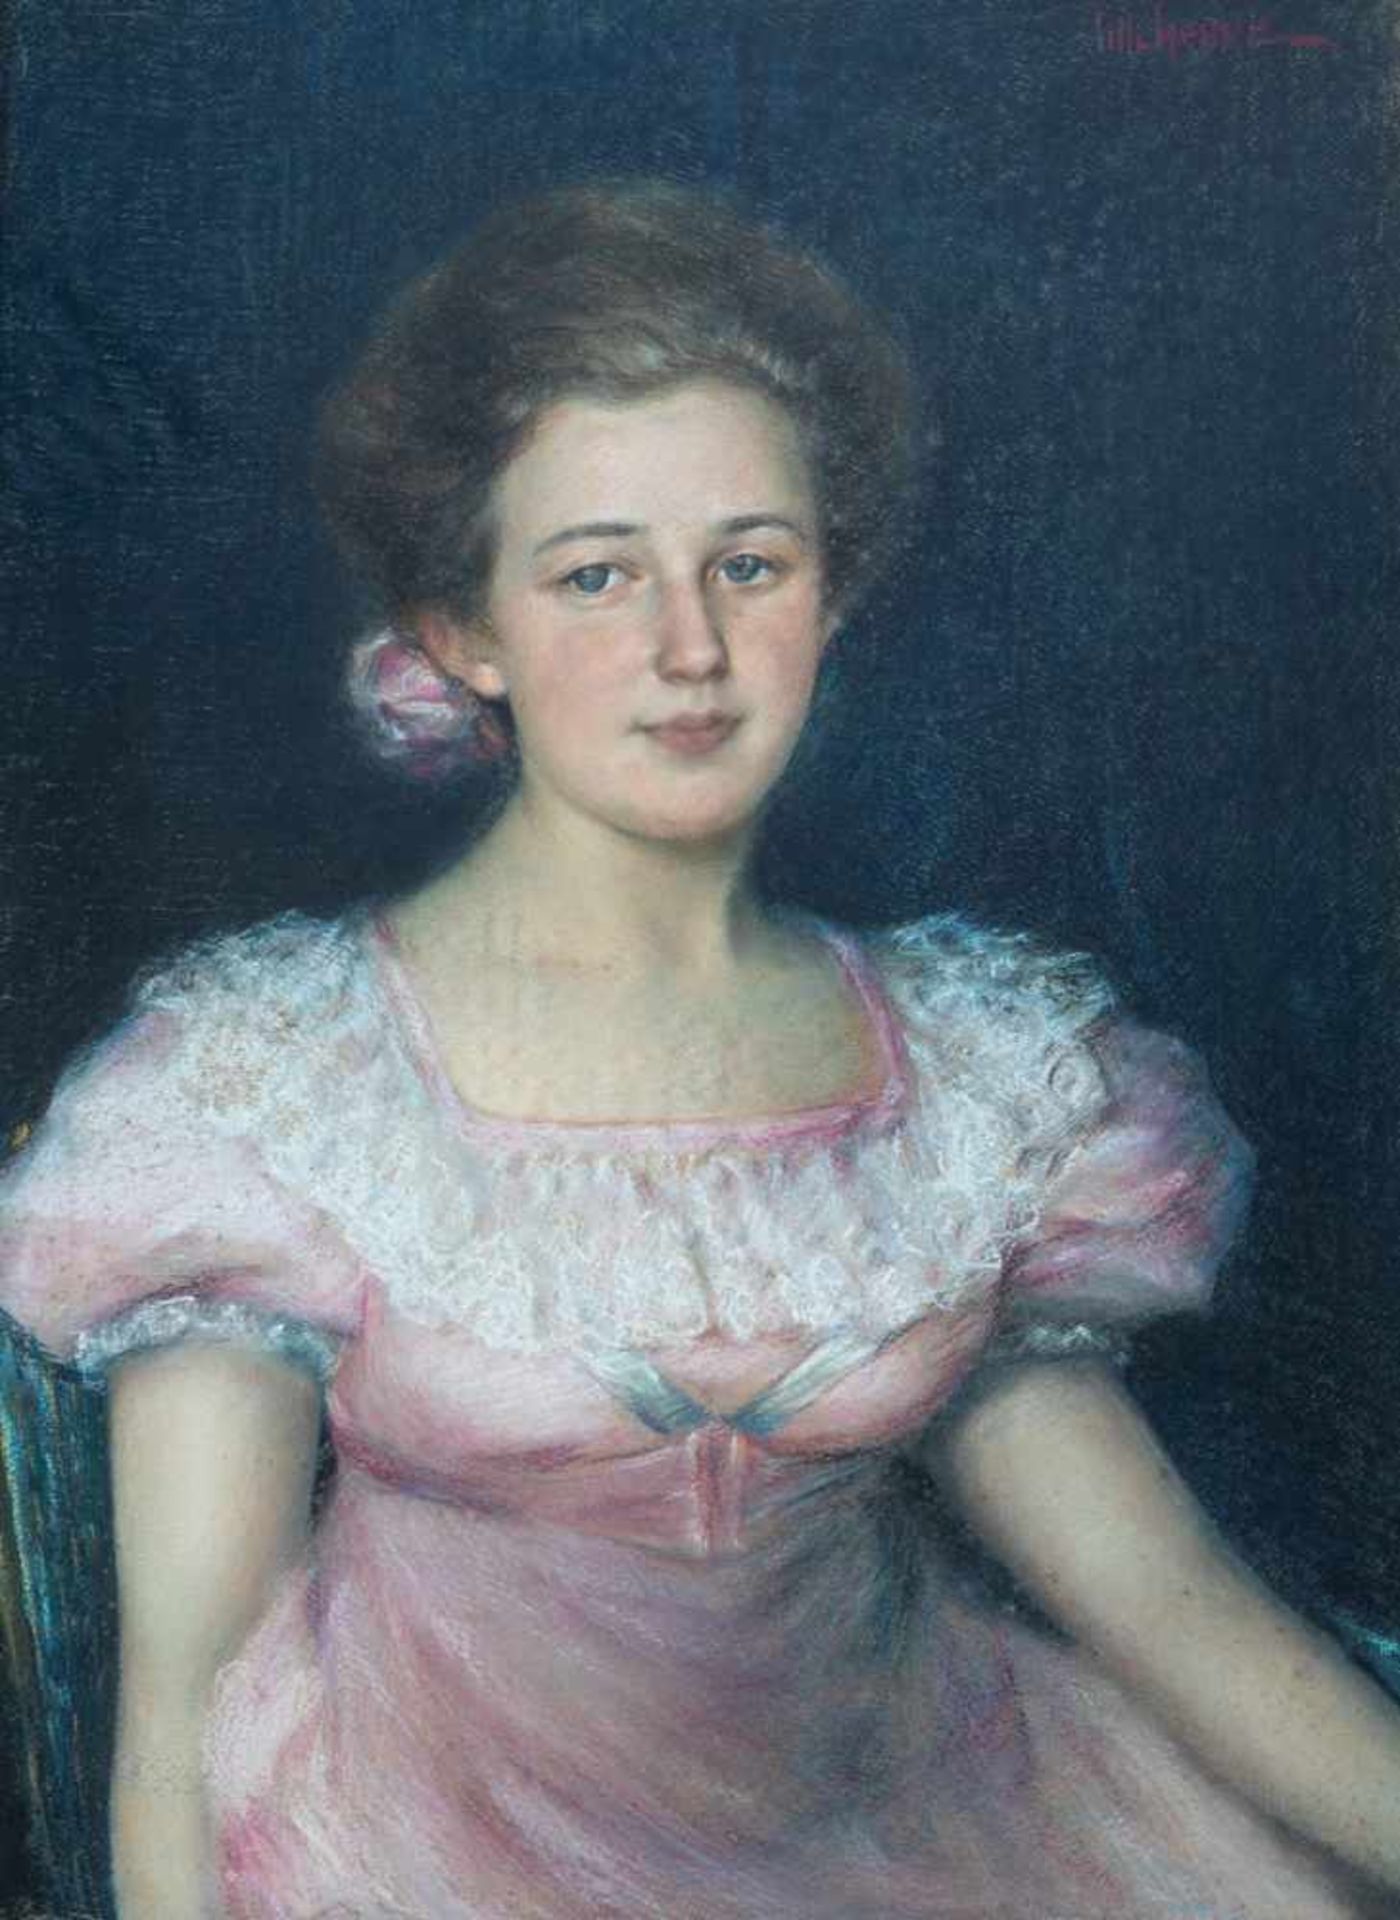 Lilli HesseDeutschland 19./20. Jahrhundert Porträt eines Mädchens in rosa Kleid mit Spitzenbesatz.